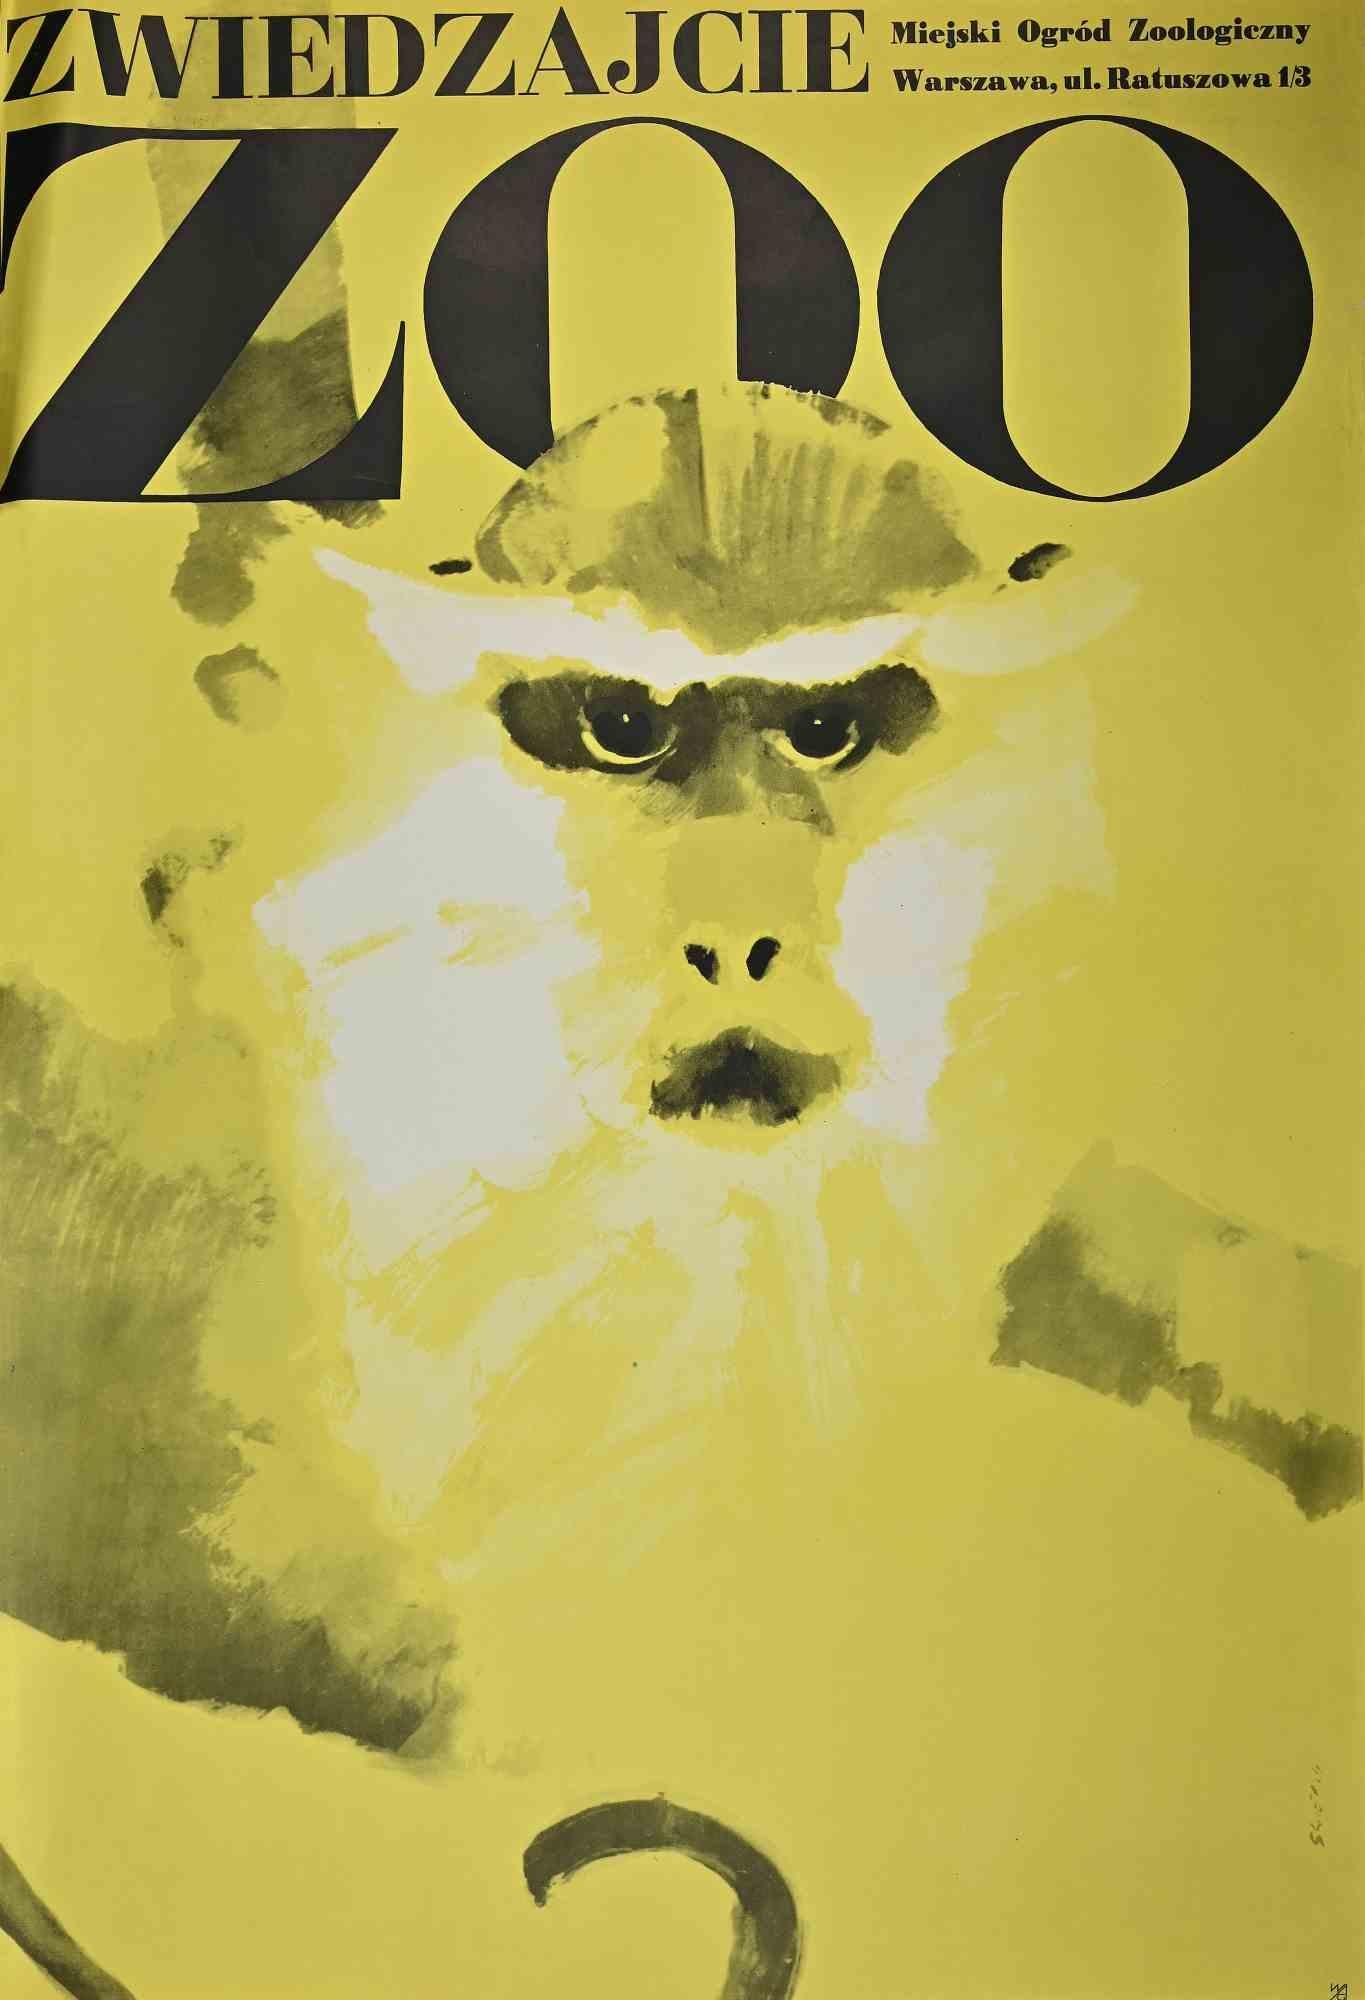 Zoo - Poster vintage est un poster vintage réalisé par M. Swierzy, en 1974.

Impression offset en couleur.

Signé dans la plaque.

Bon état, sauf quelques coupures dans les marges.